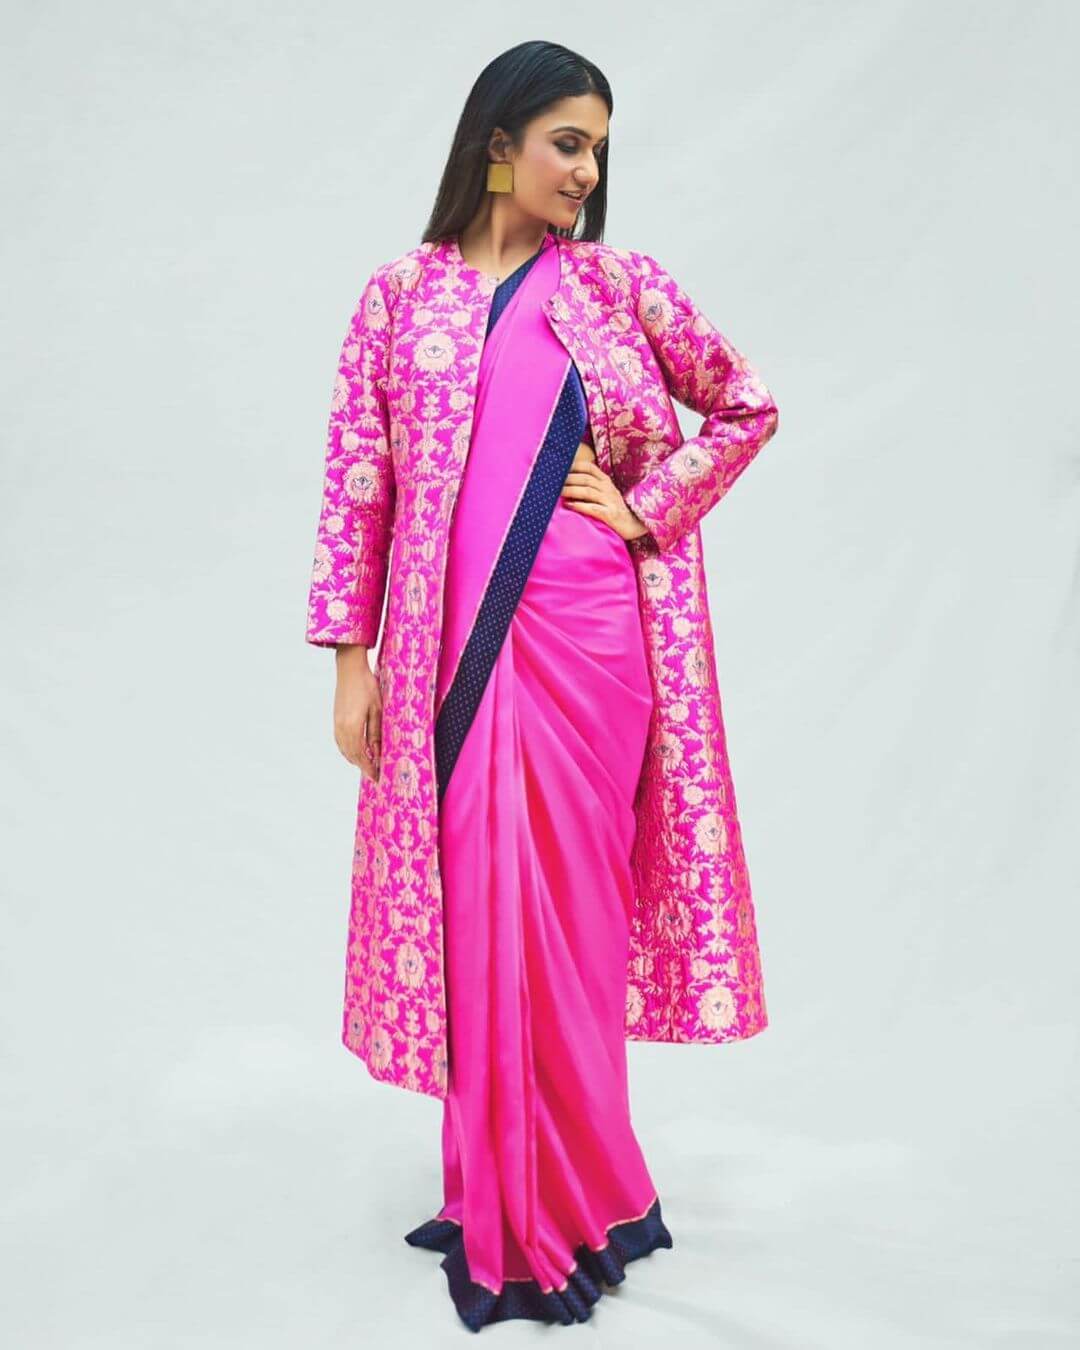 Amruta Subhash Elegant Look In Pink Saree With Pink Long Coat